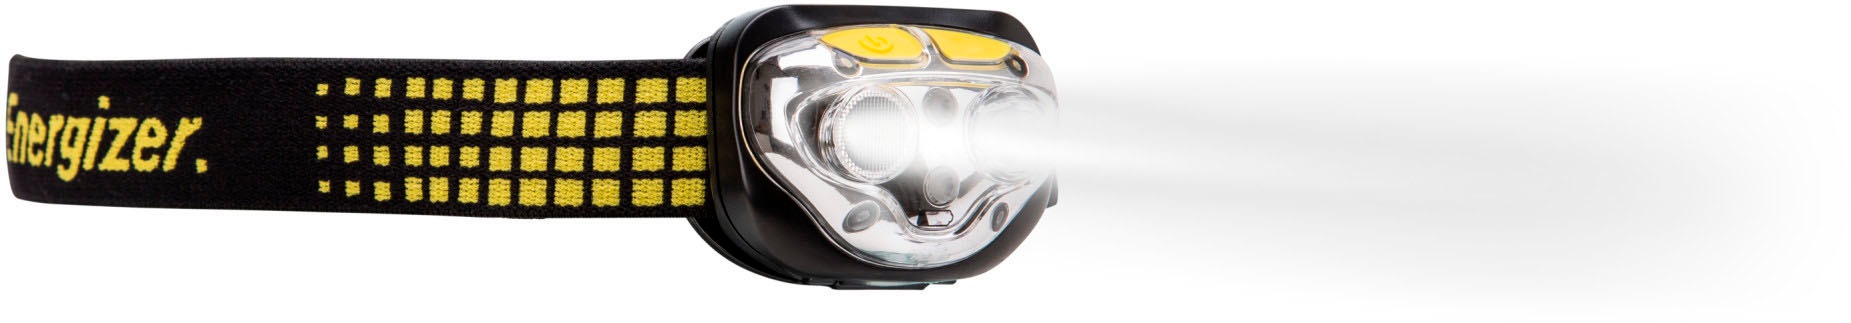 Energizer LED Stirnlampe »Vision Ultra 450 Lumen«